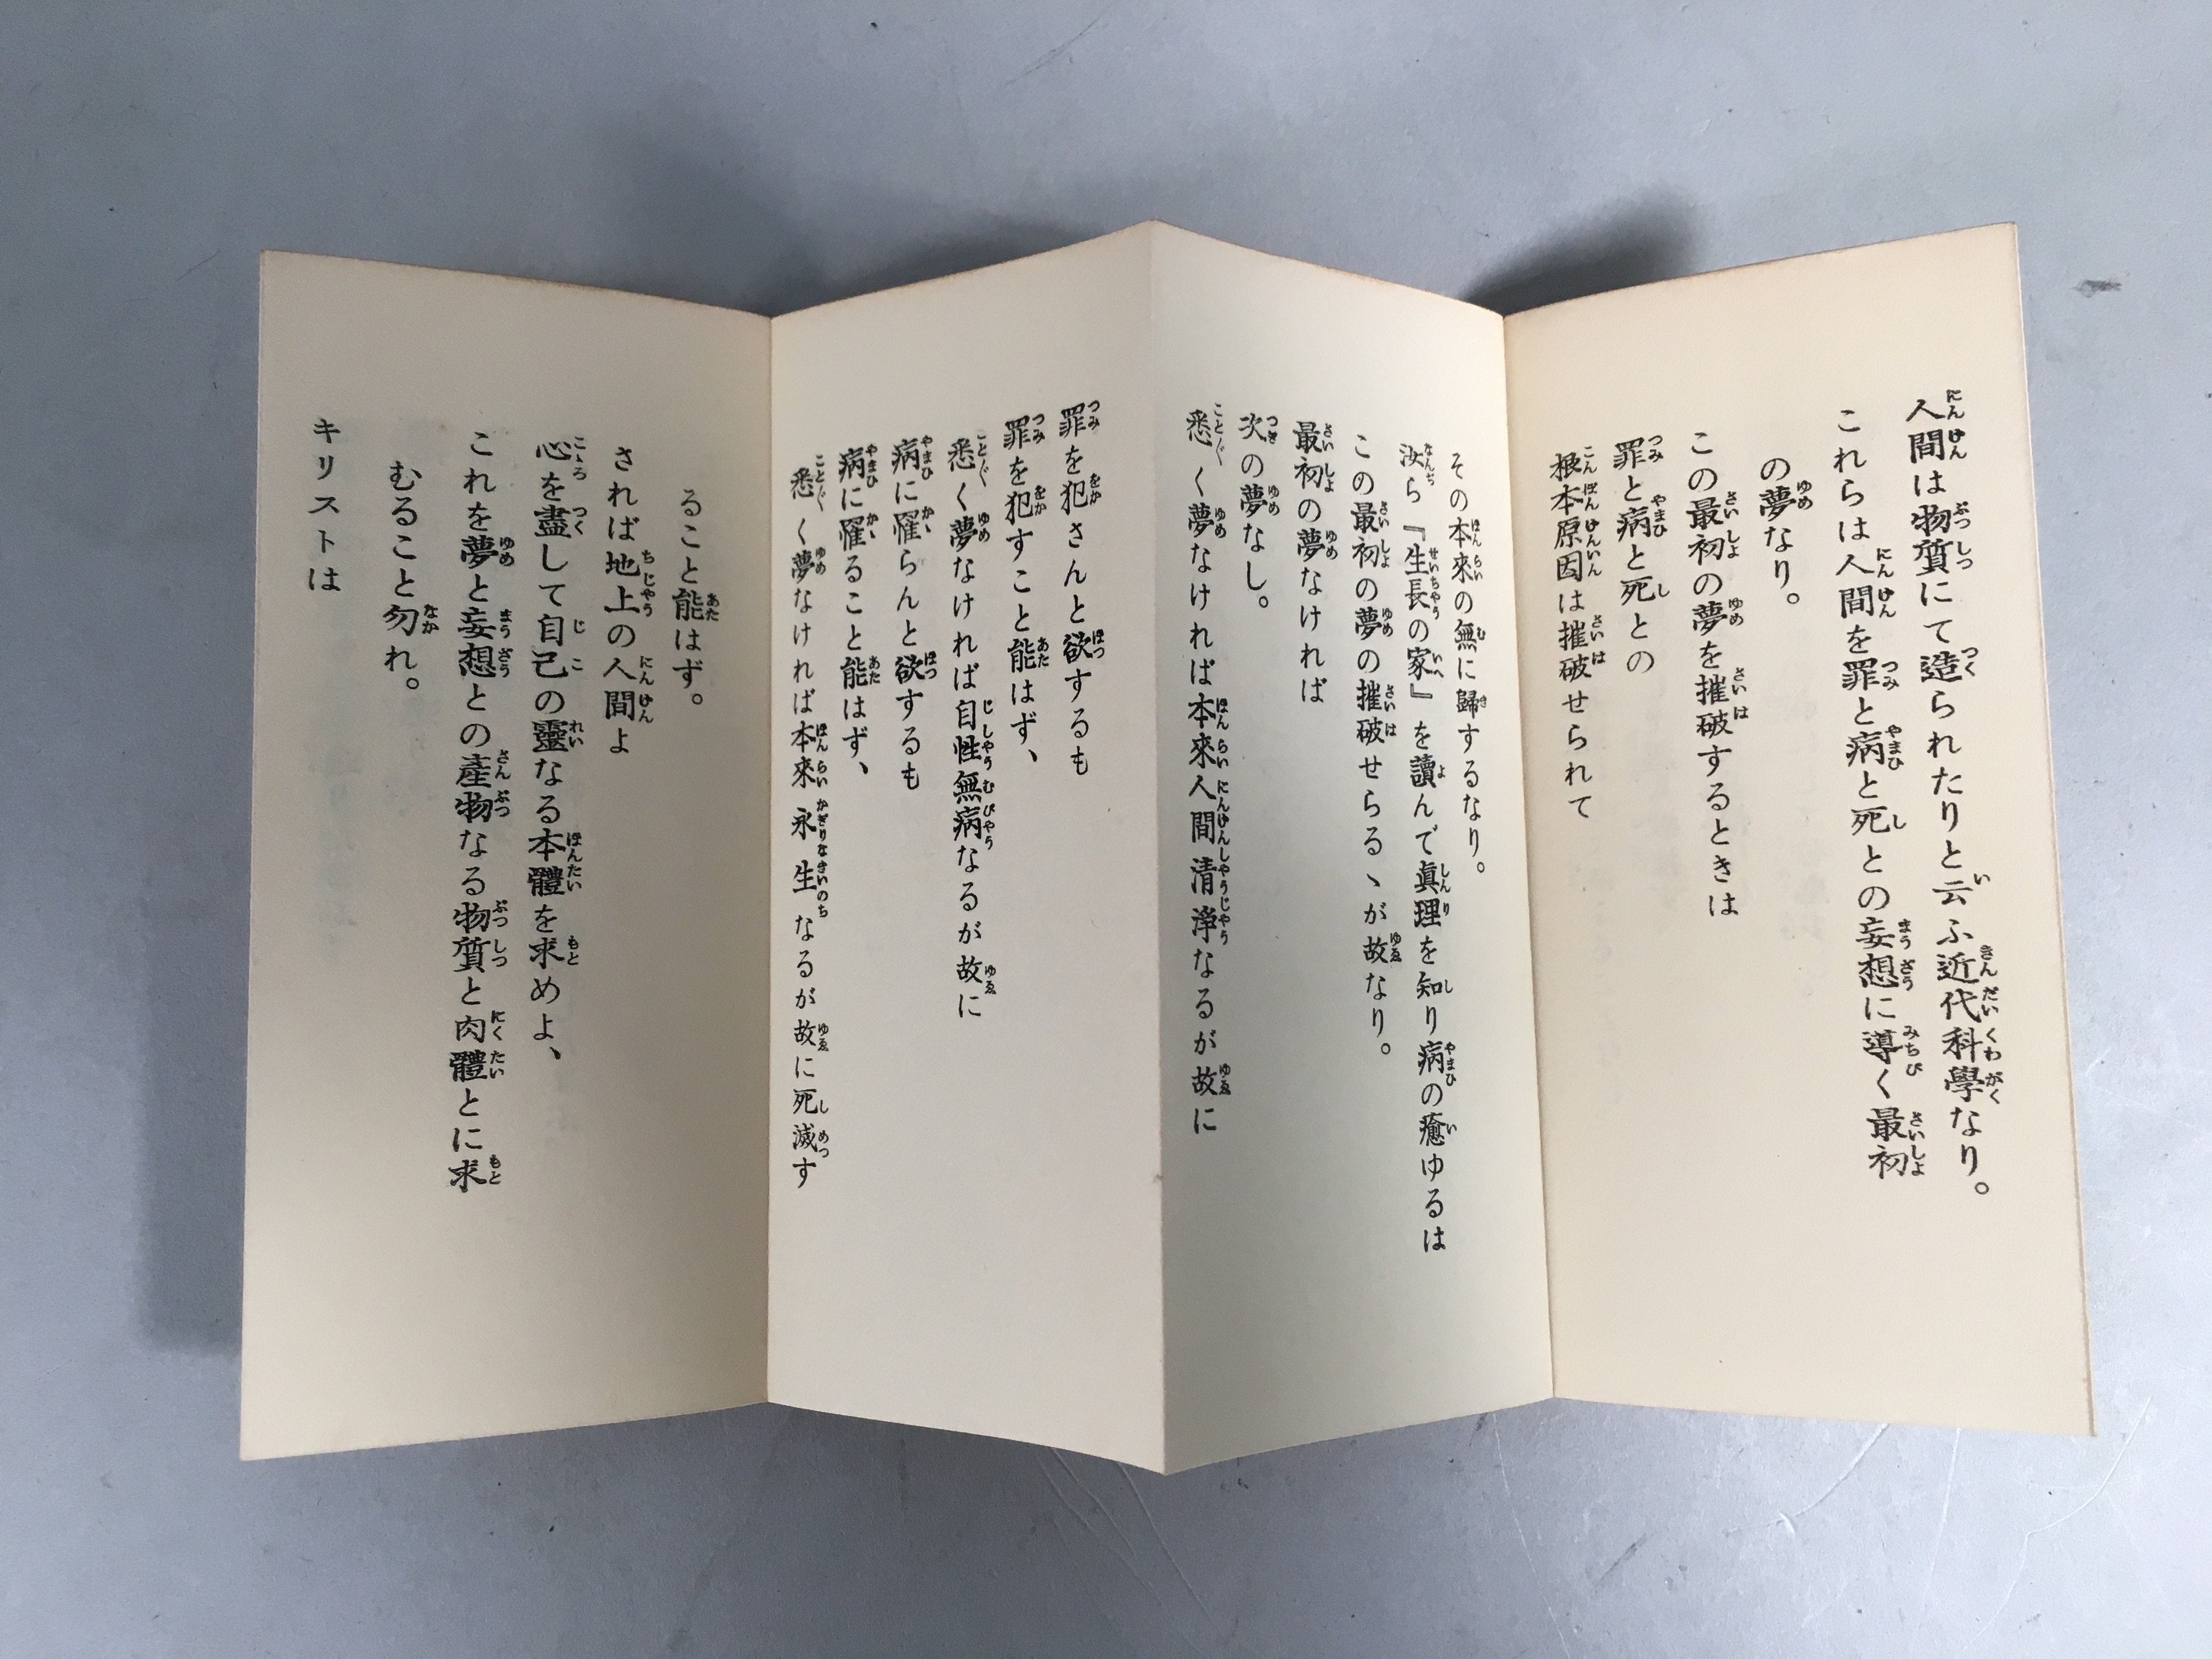 Japanese Religious Sutra Book Vtg Paper Folding Holy Seicho-No-Ie BU298